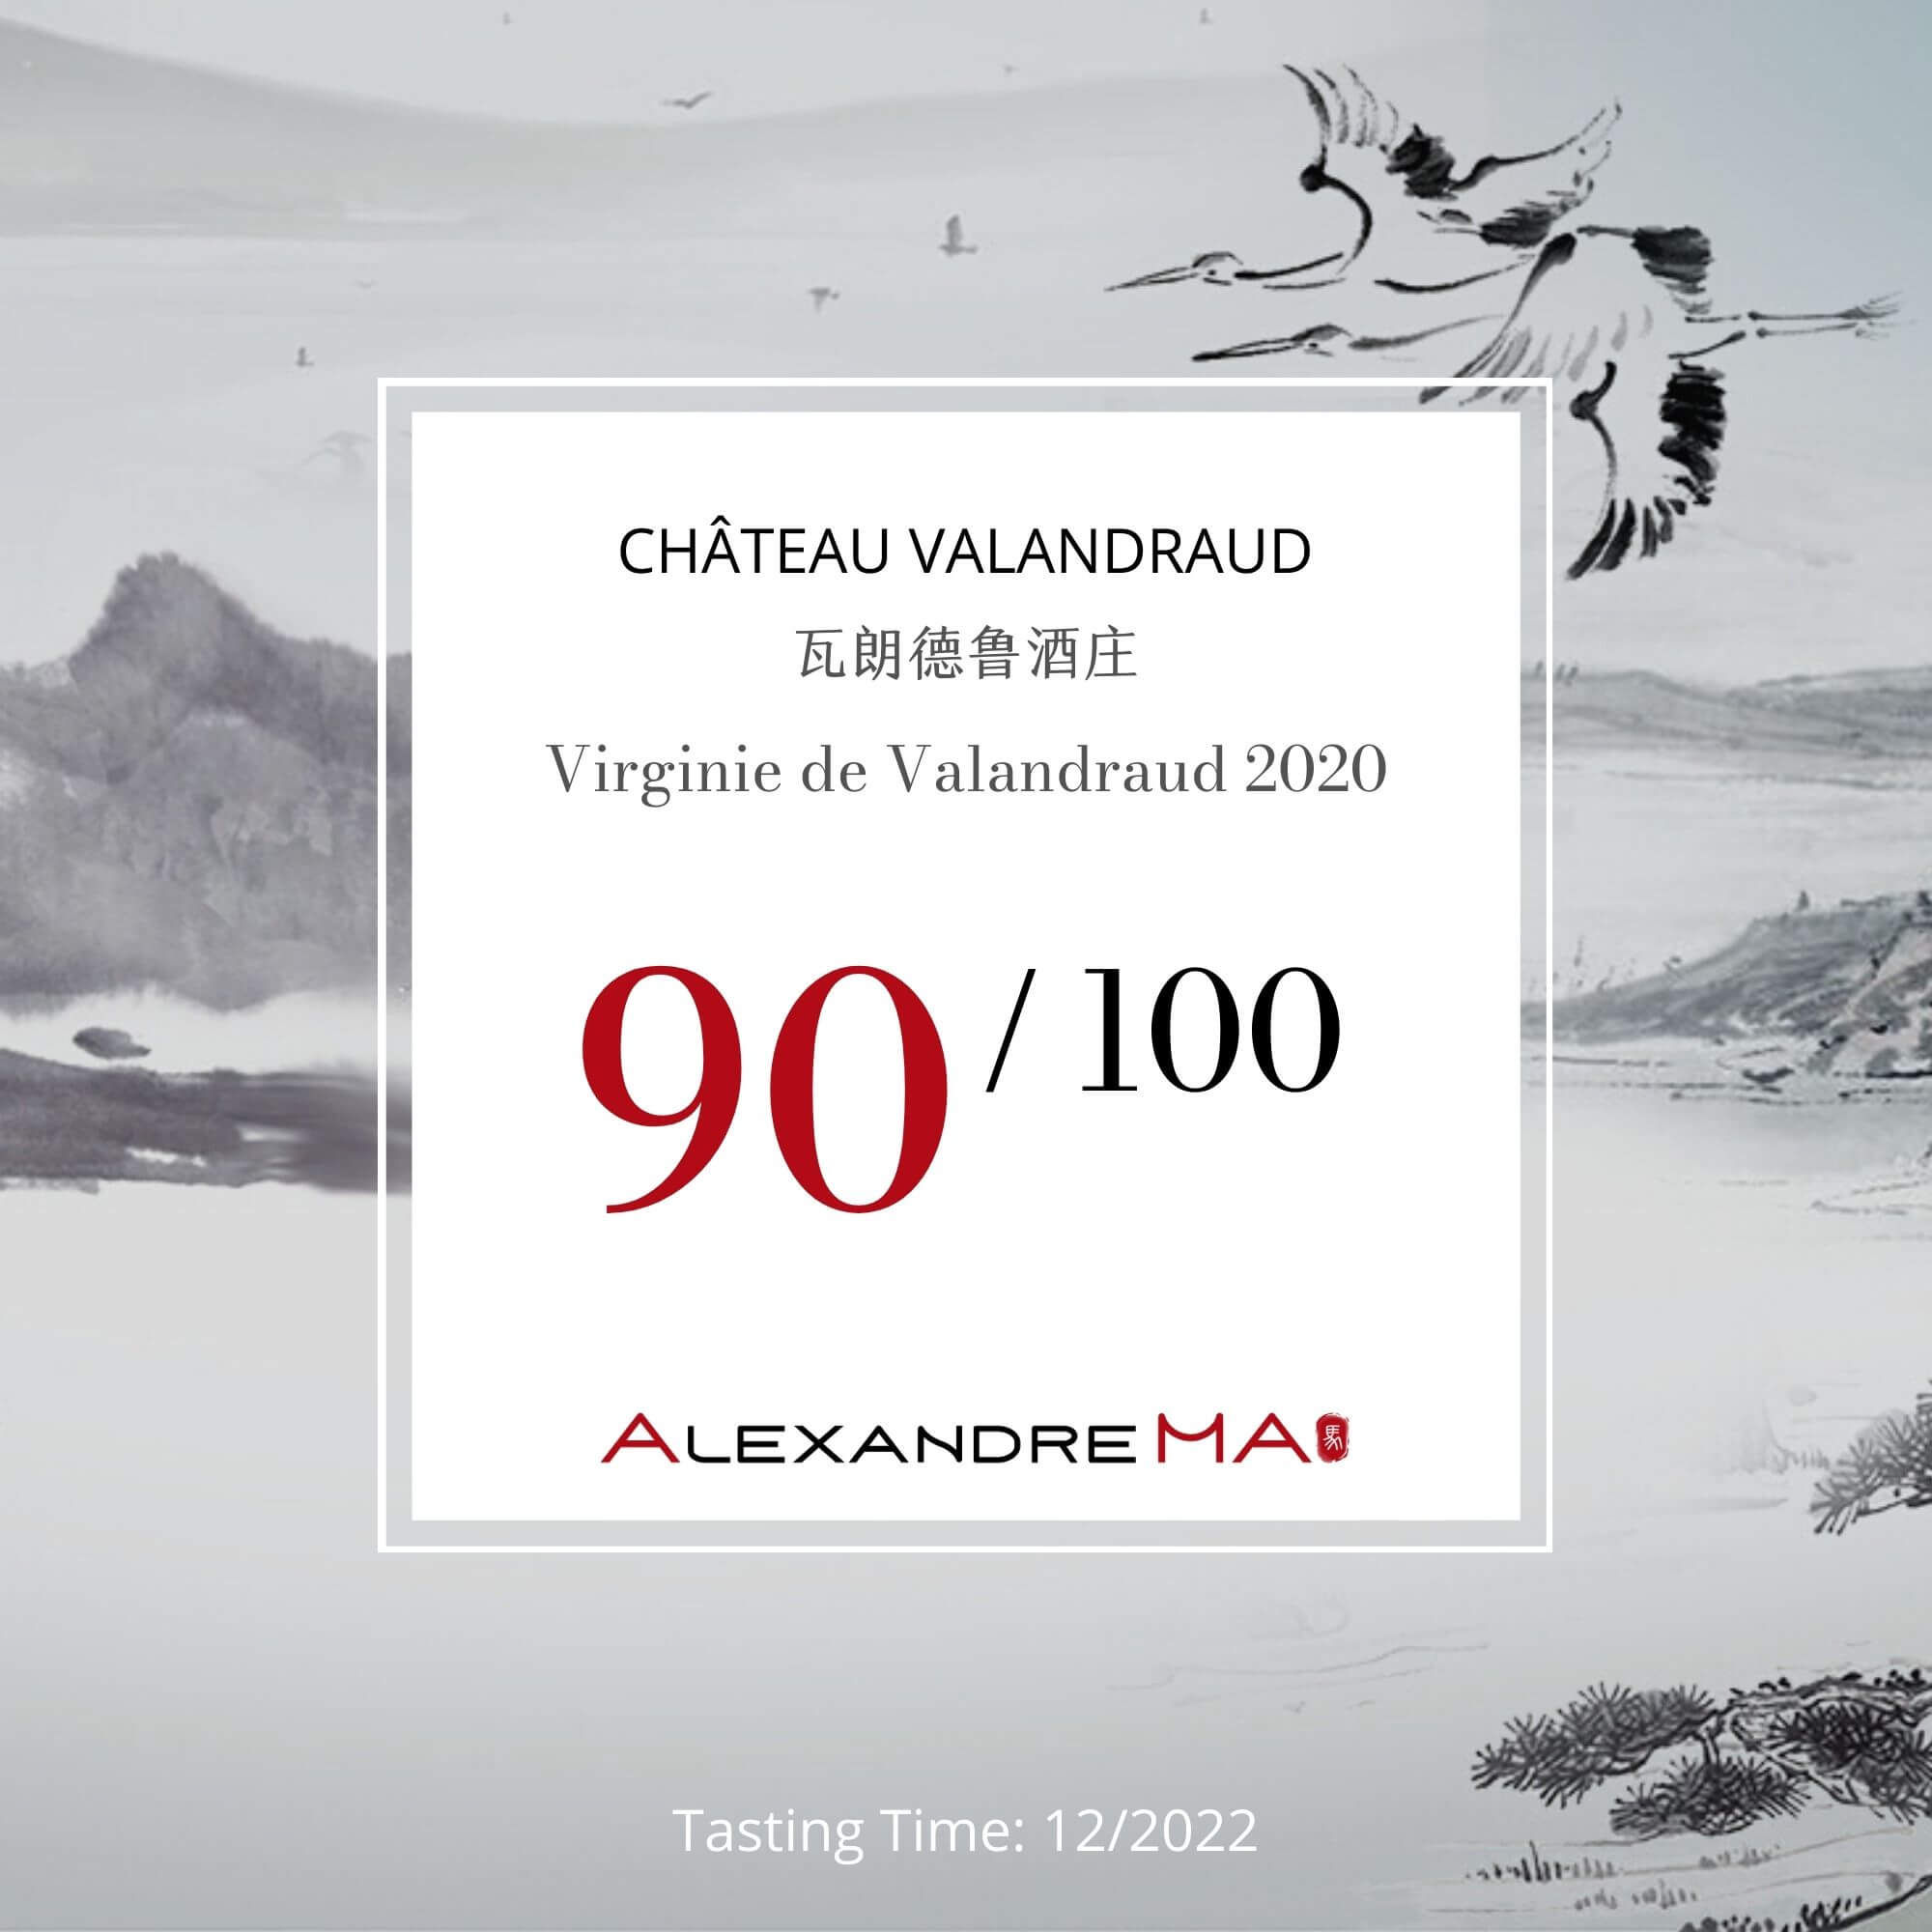 Château Valandraud 2020 - Alexandre MA